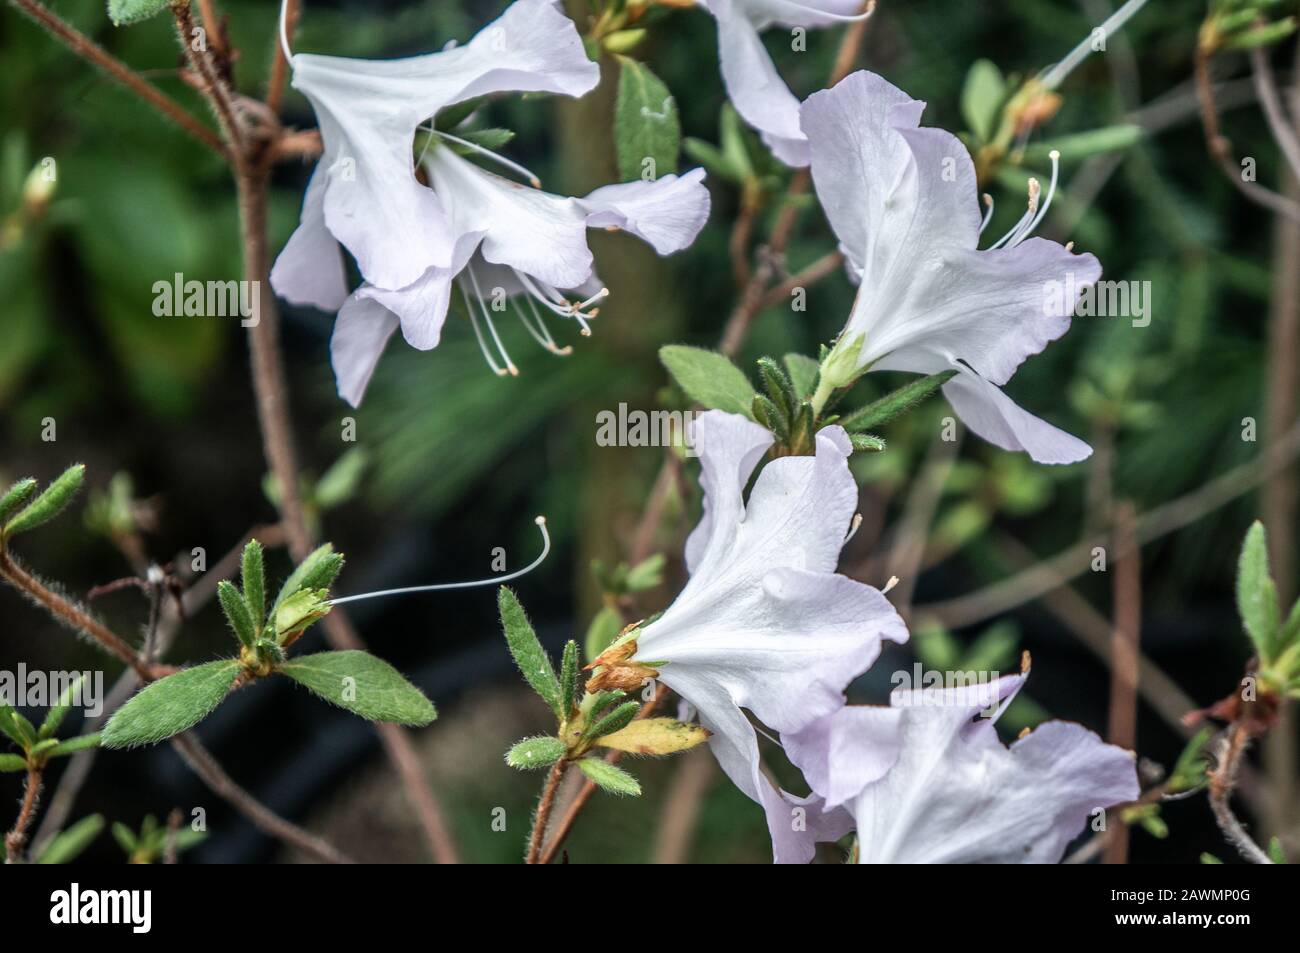 Flores en forma de campana de rododendron blanco brillante de estilo minimalista en macro. Fondo verde difuminado con luz natural y pequeñas hojas oscuras Foto de stock